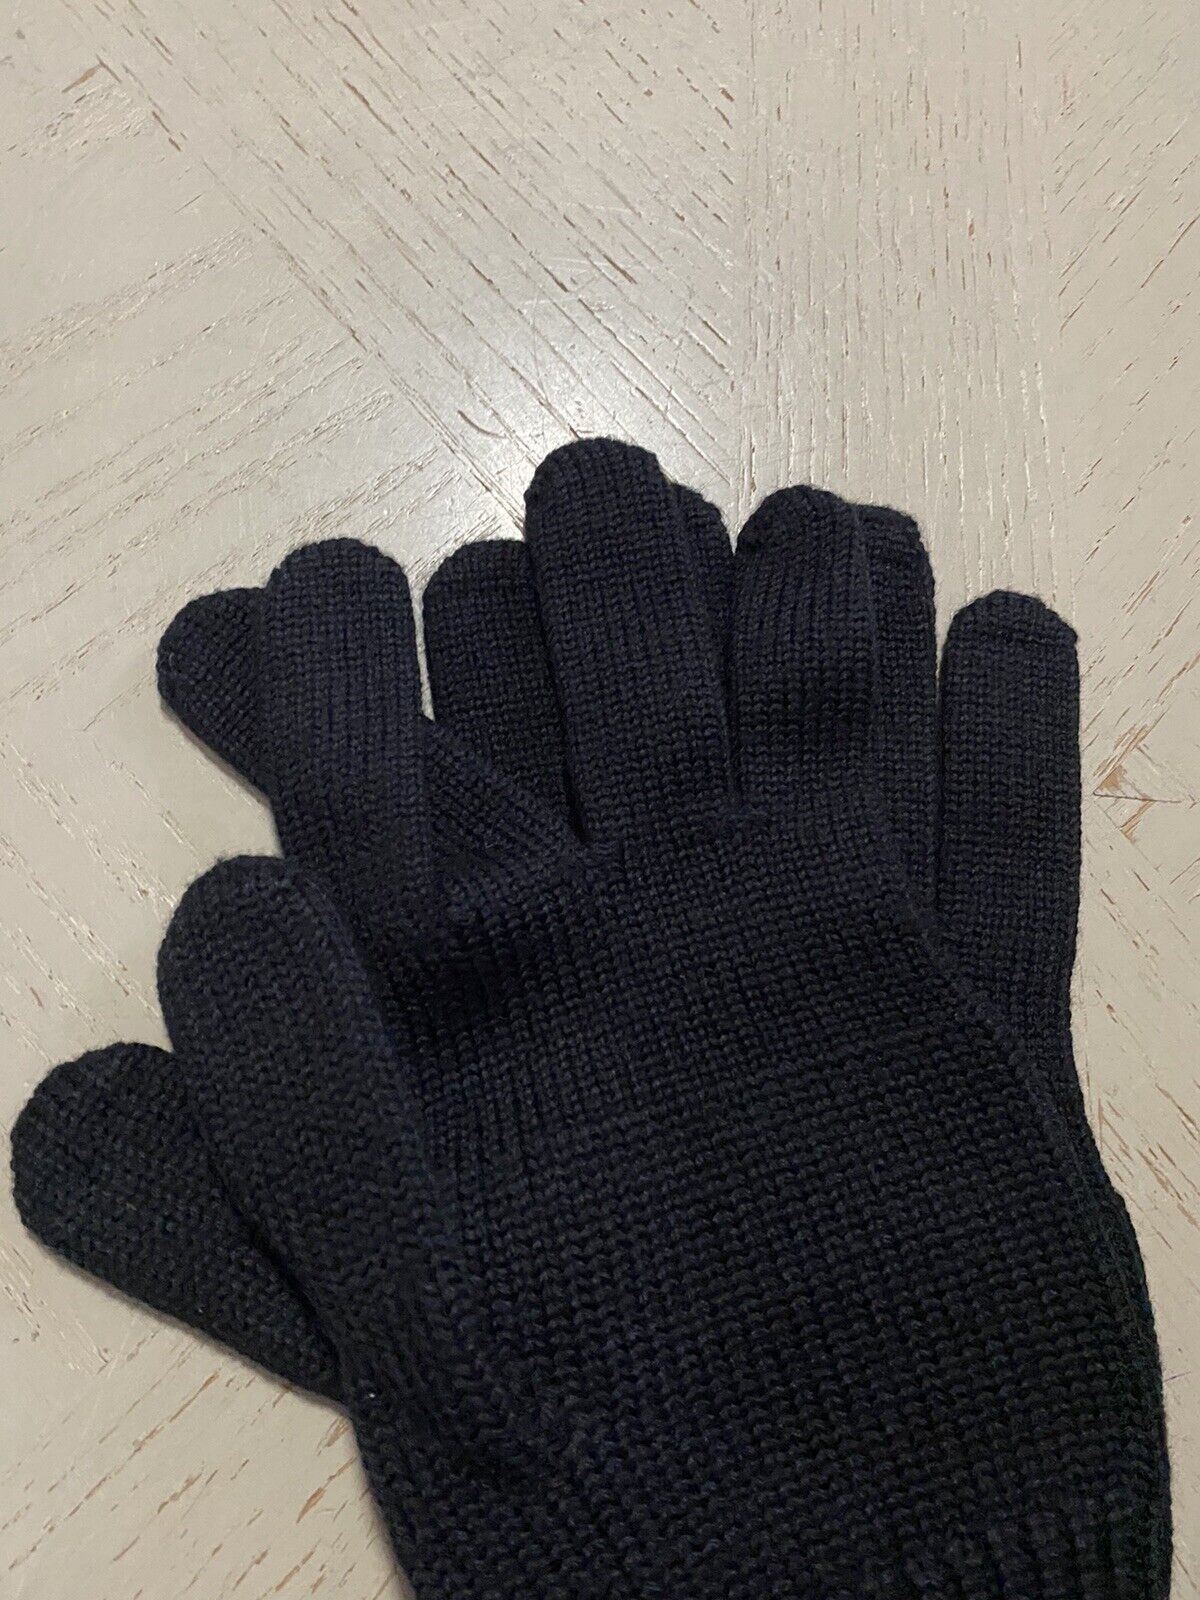 NWT Шерстяные перчатки Bottega Veneta, черные, размер L, Италия